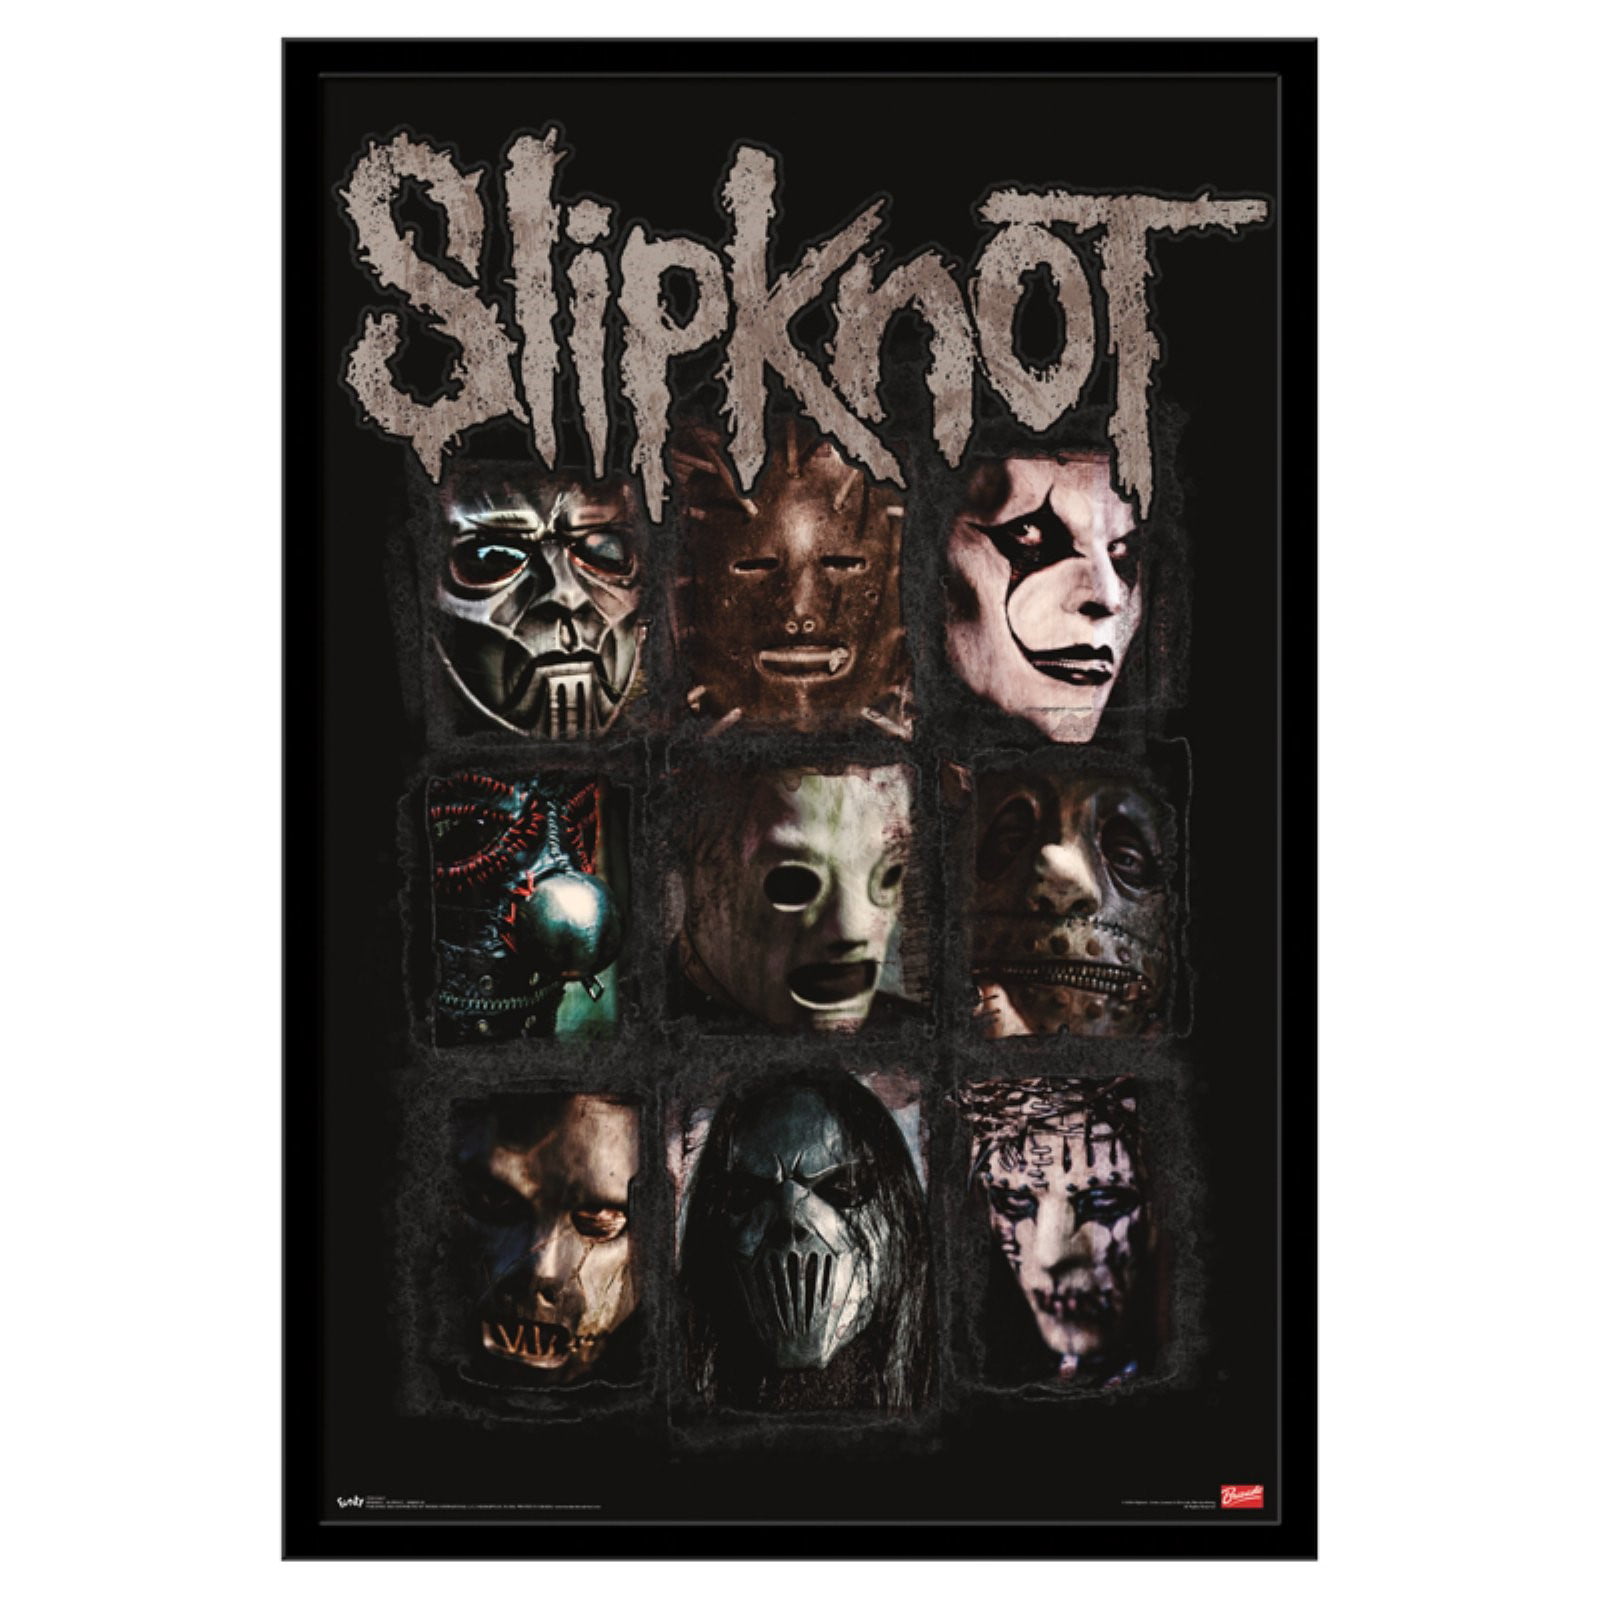 Slipknot Textile Flag Fractions Black 77 x 105cm 